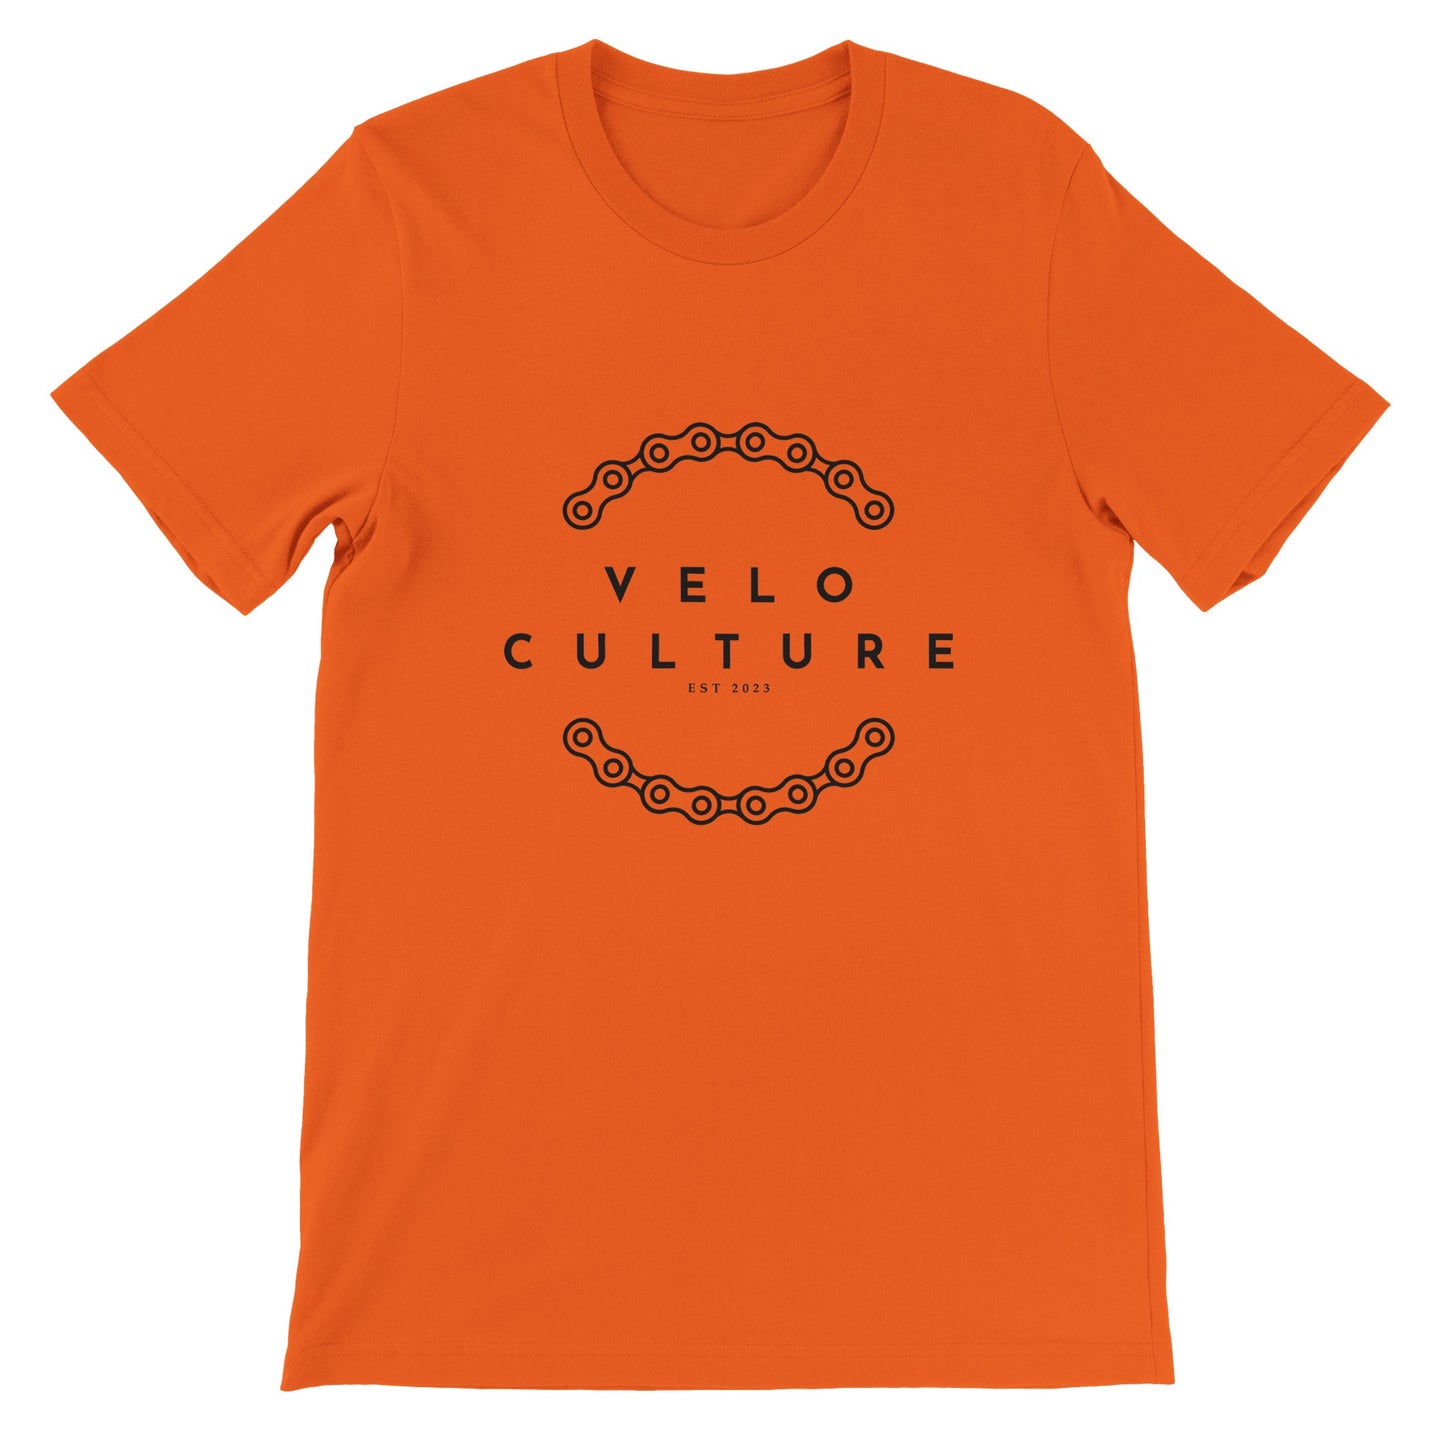 VeloCulture Premium Unisex Crewneck T-shirt